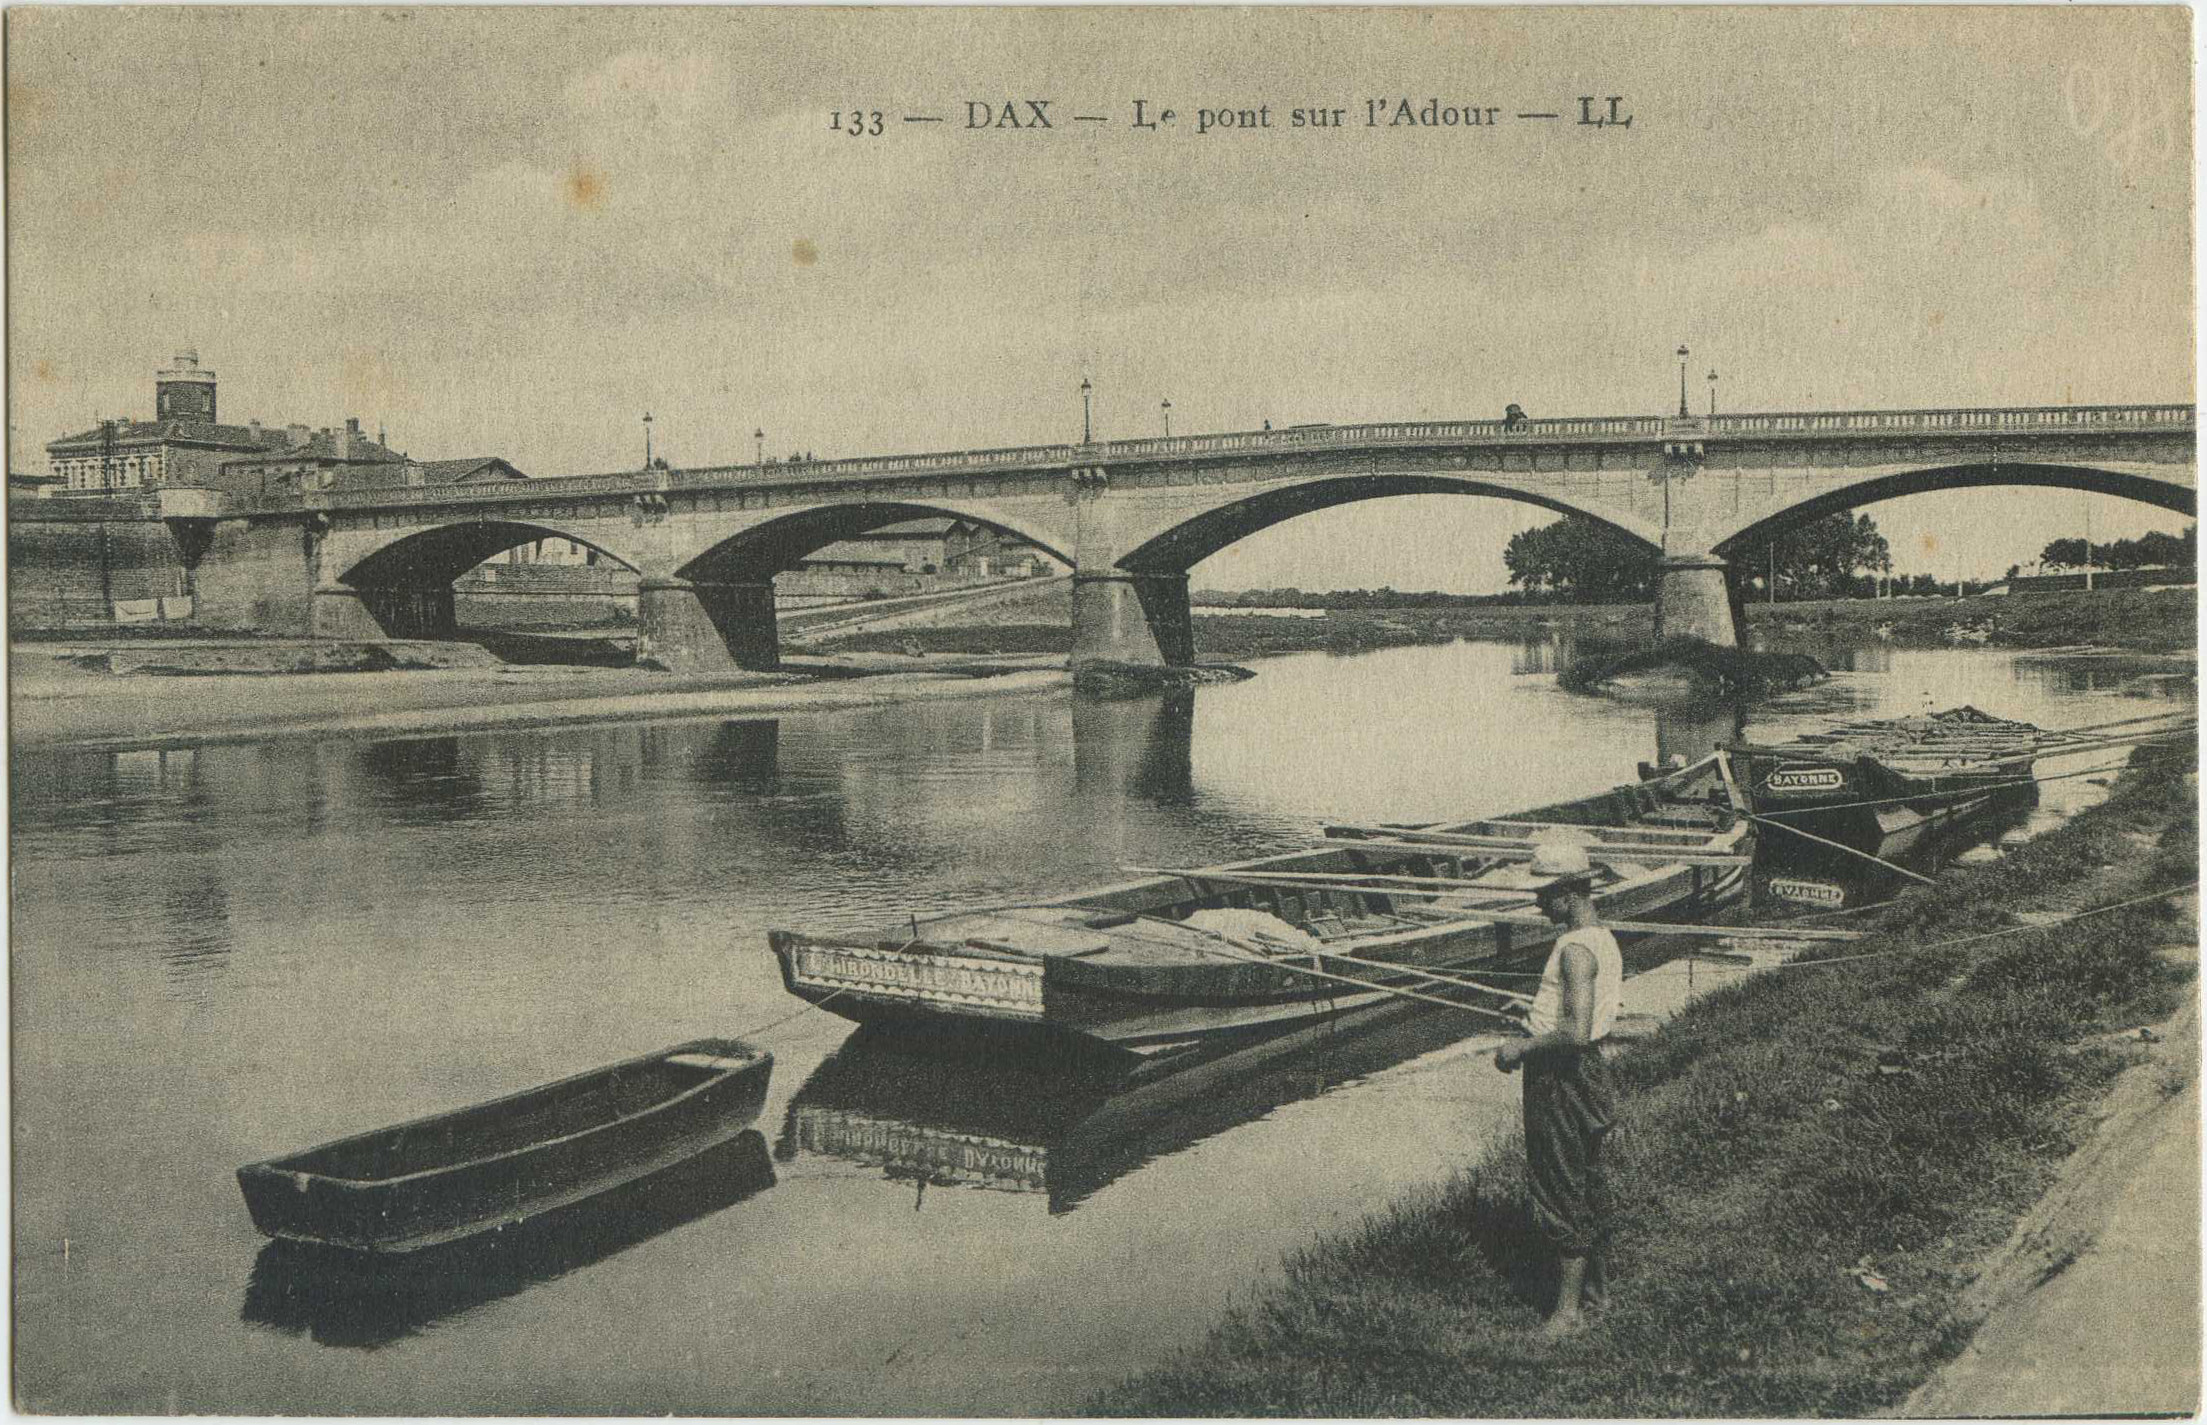 Dax - Le pont sur l'Adour